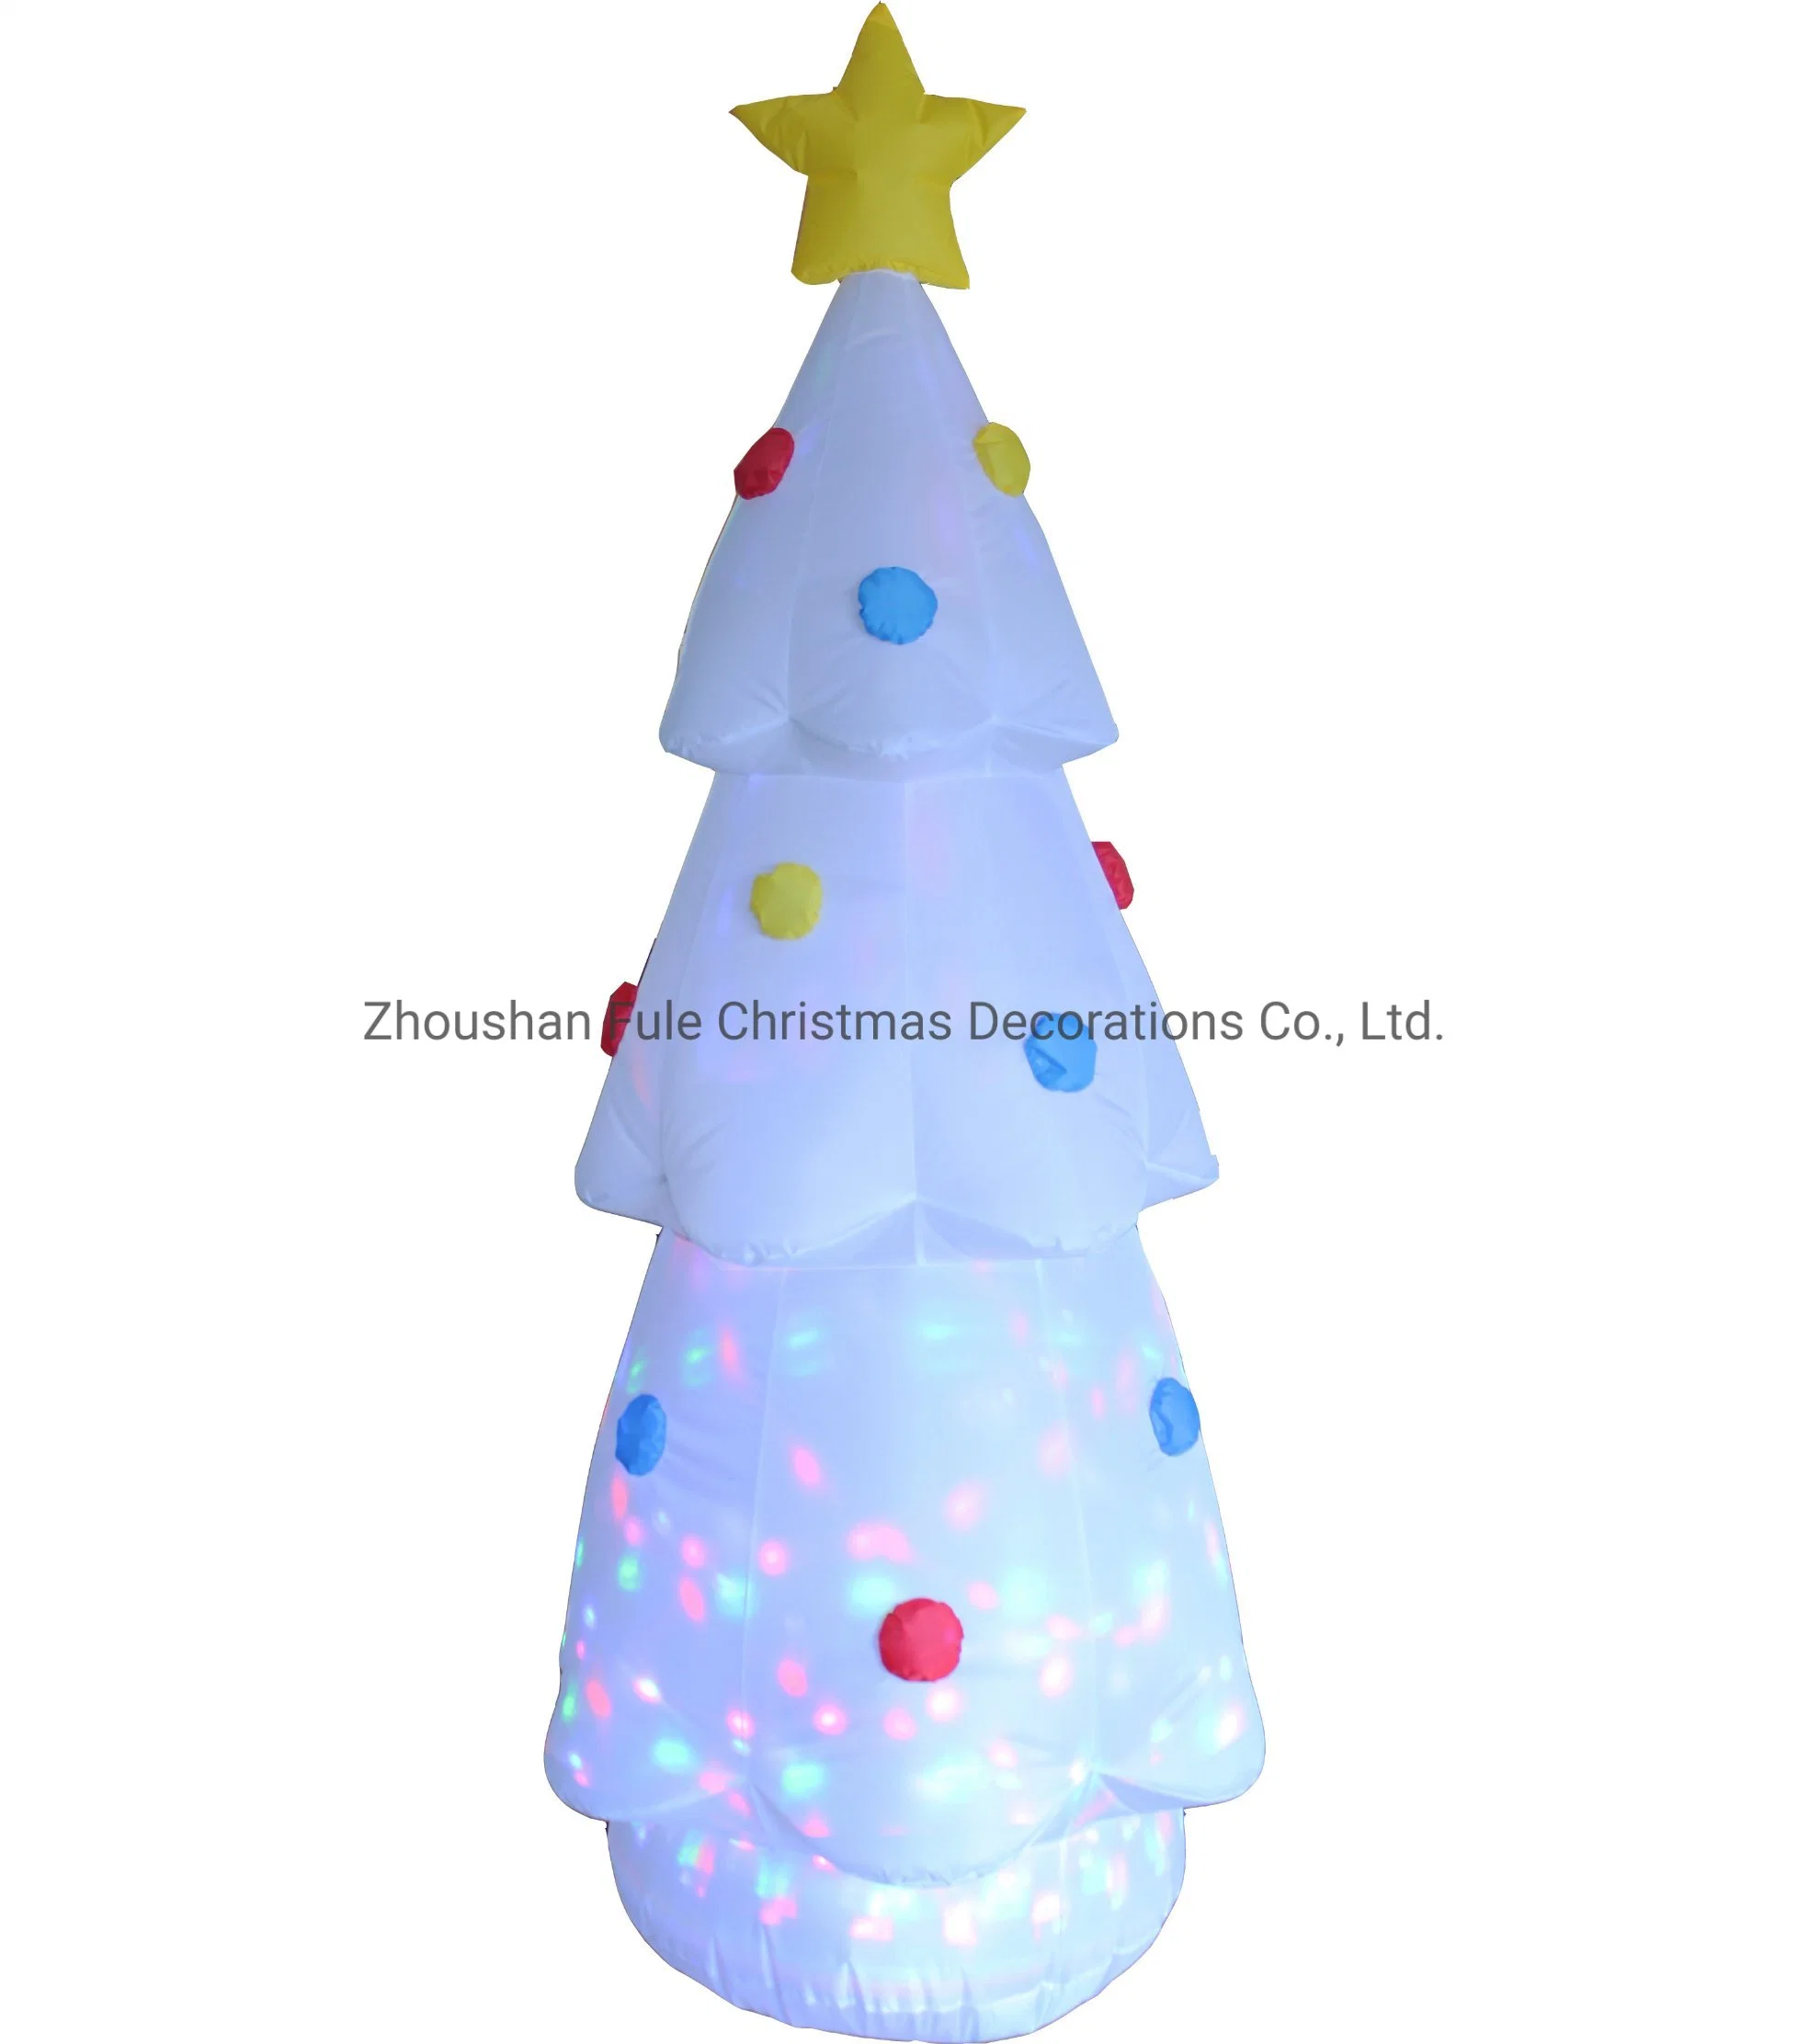 Chaud blanc gonflable Arbre de Noël avec LED de projection pour la maison de la décoration.